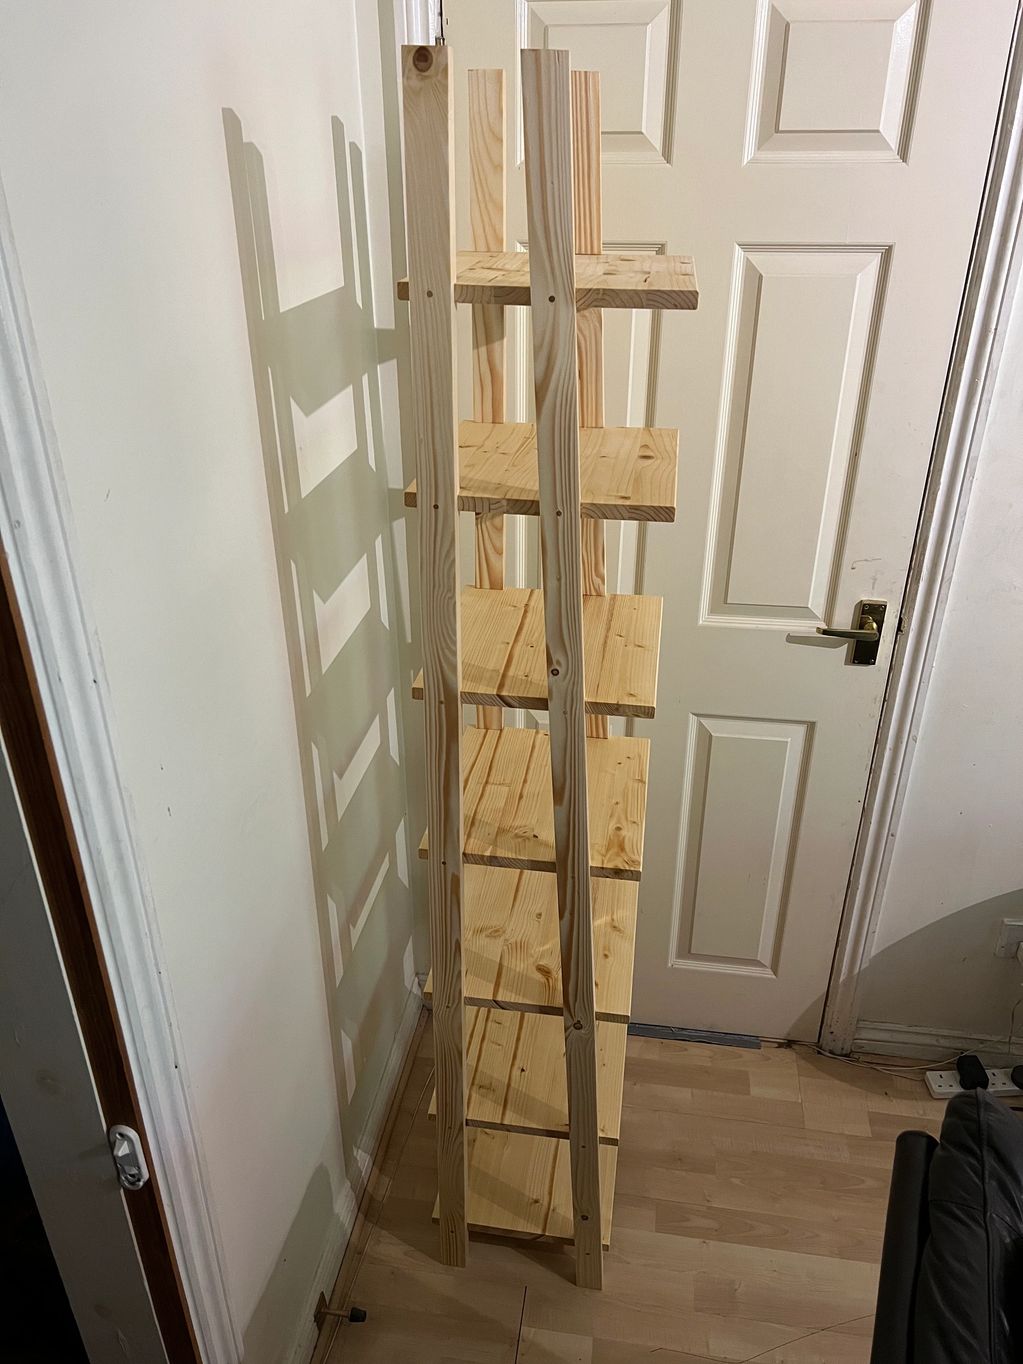 All pine bespoke wooden shelving rack